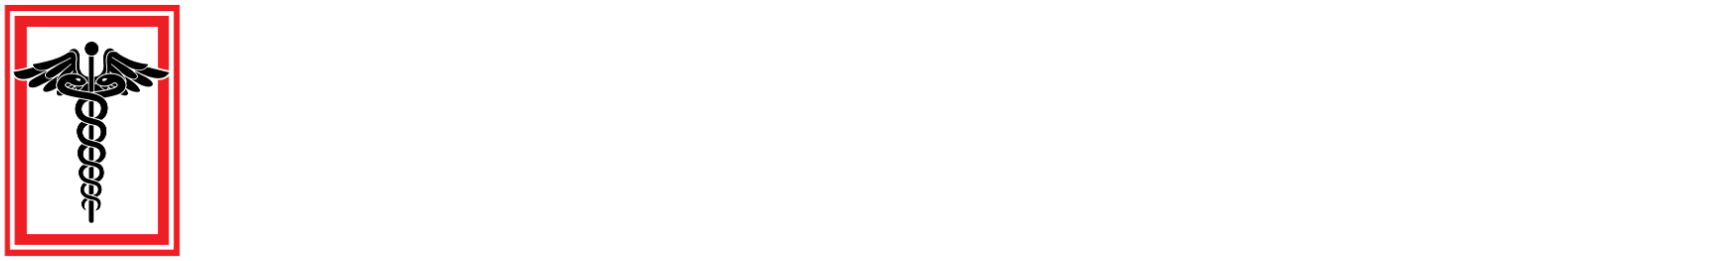 MedStudentNotes.com Logo